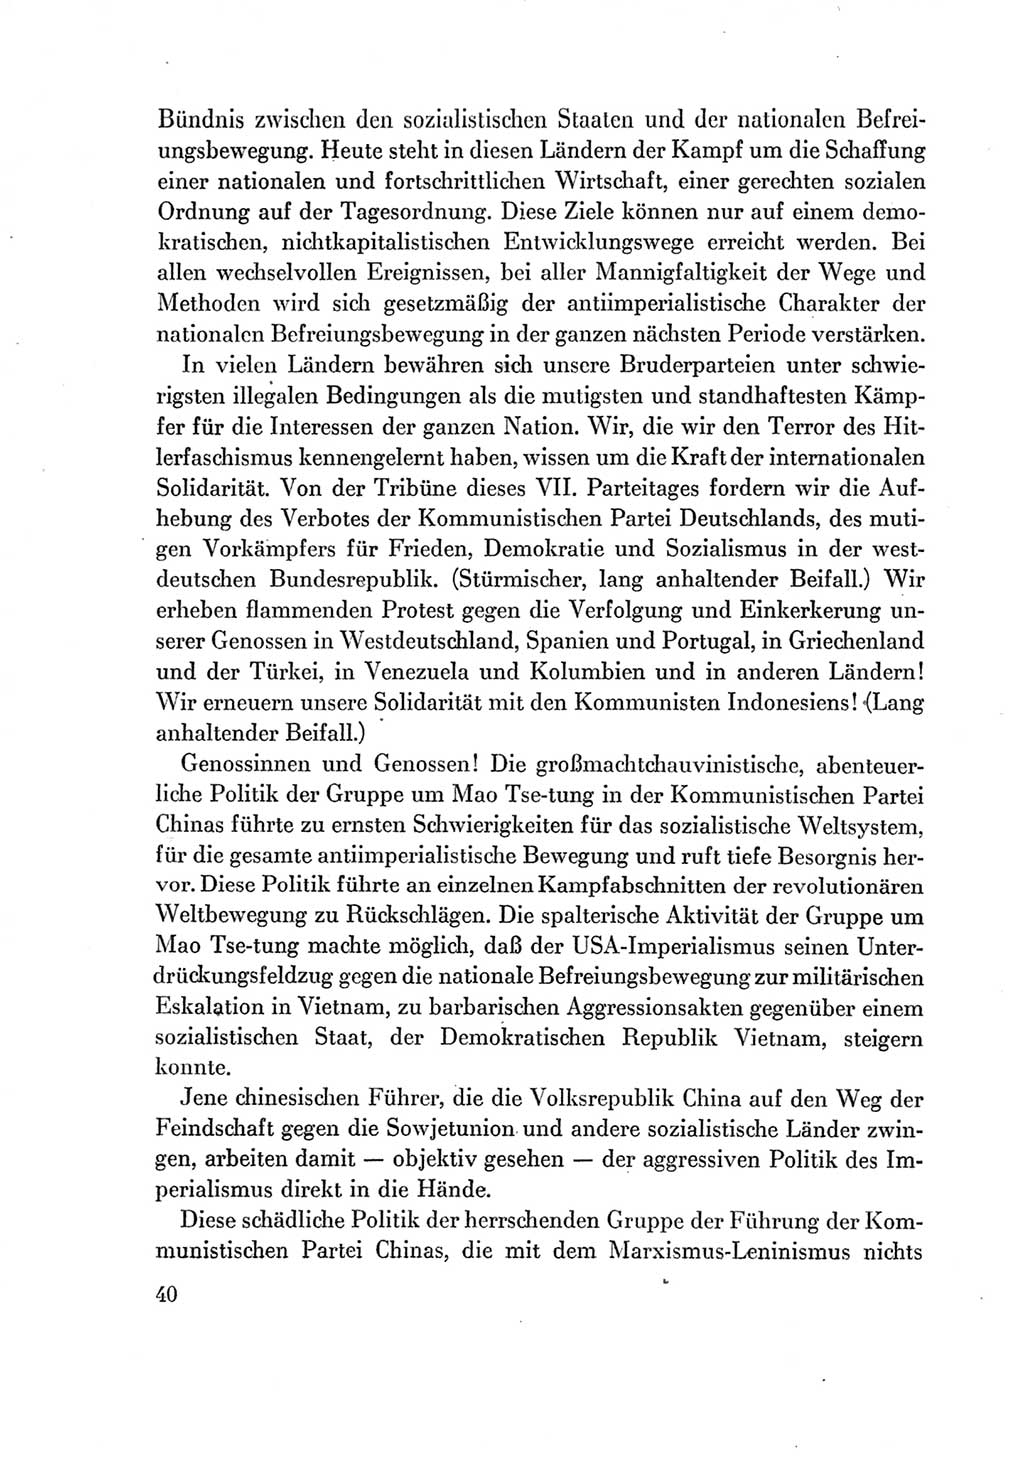 Protokoll der Verhandlungen des Ⅶ. Parteitages der Sozialistischen Einheitspartei Deutschlands (SED) [Deutsche Demokratische Republik (DDR)] 1967, Band Ⅱ, Seite 40 (Prot. Verh. Ⅶ. PT SED DDR 1967, Bd. Ⅱ, S. 40)